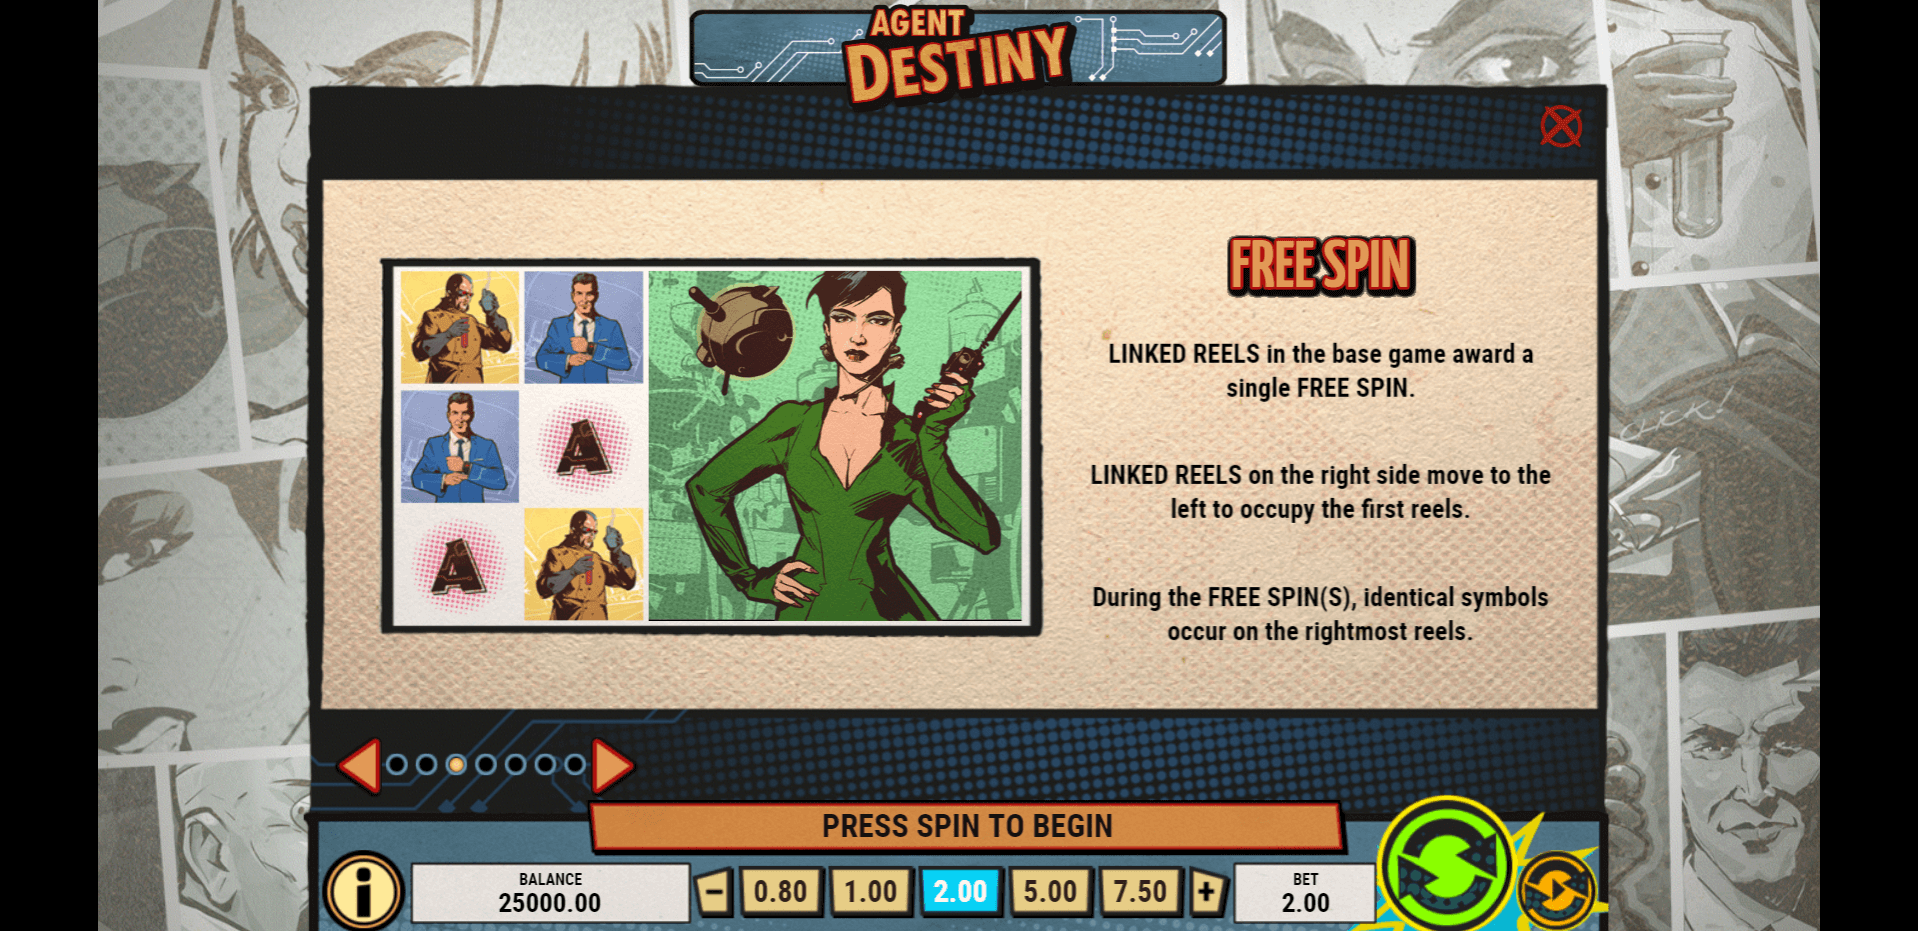 agent destiny slot machine detail image 2